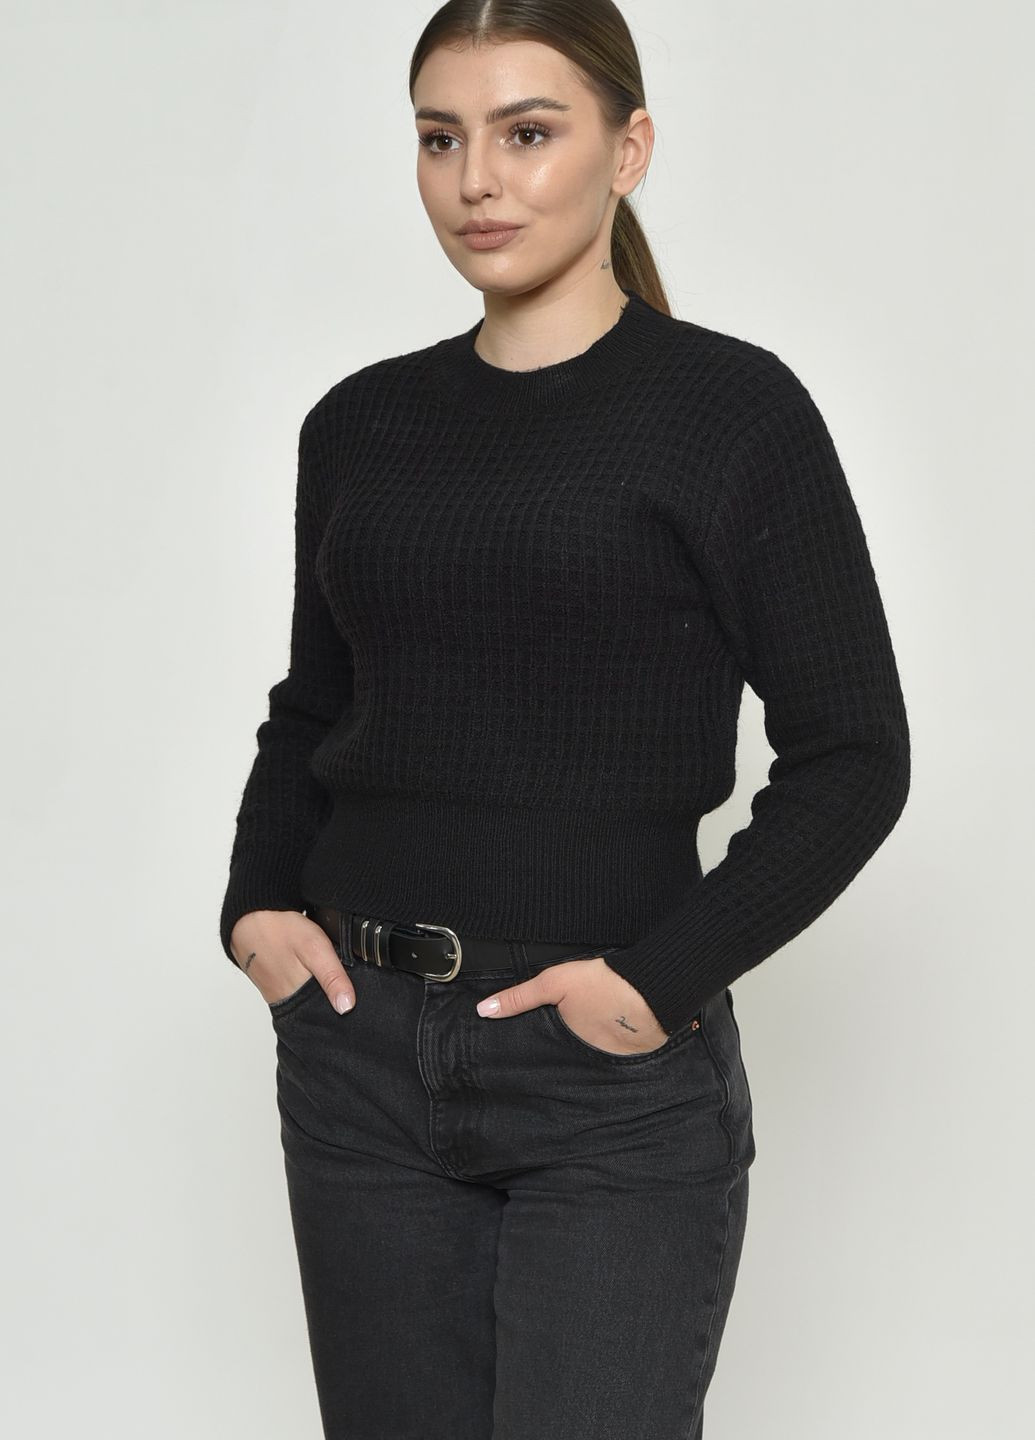 Черный демисезонный свитер женский черного цвета размер 46 джемпер Let's Shop